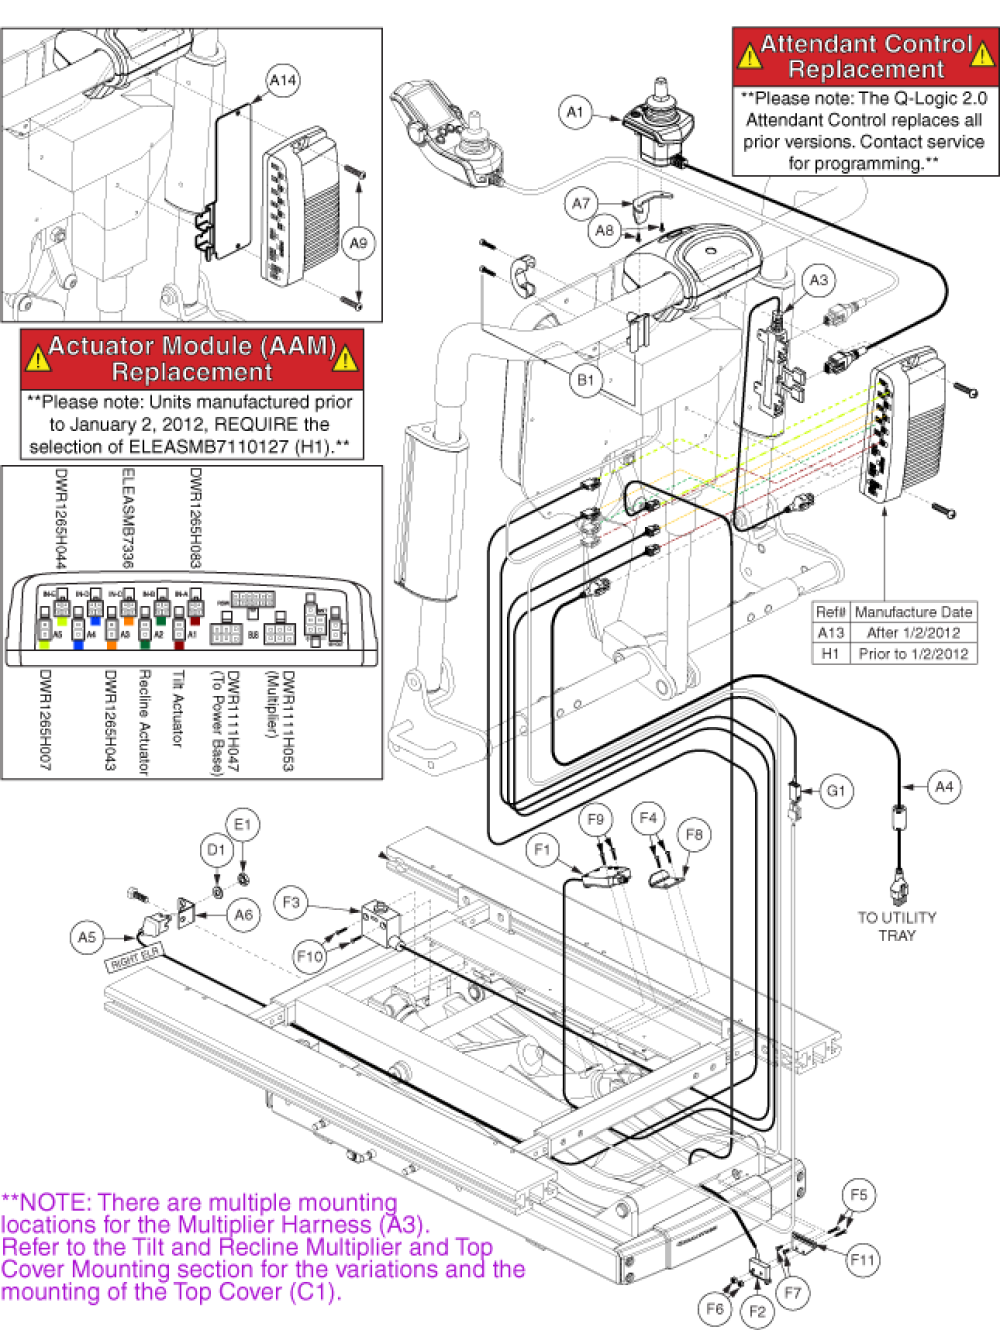 Eleasmb6099 - Lift, Tilt, Recline, Afp parts diagram